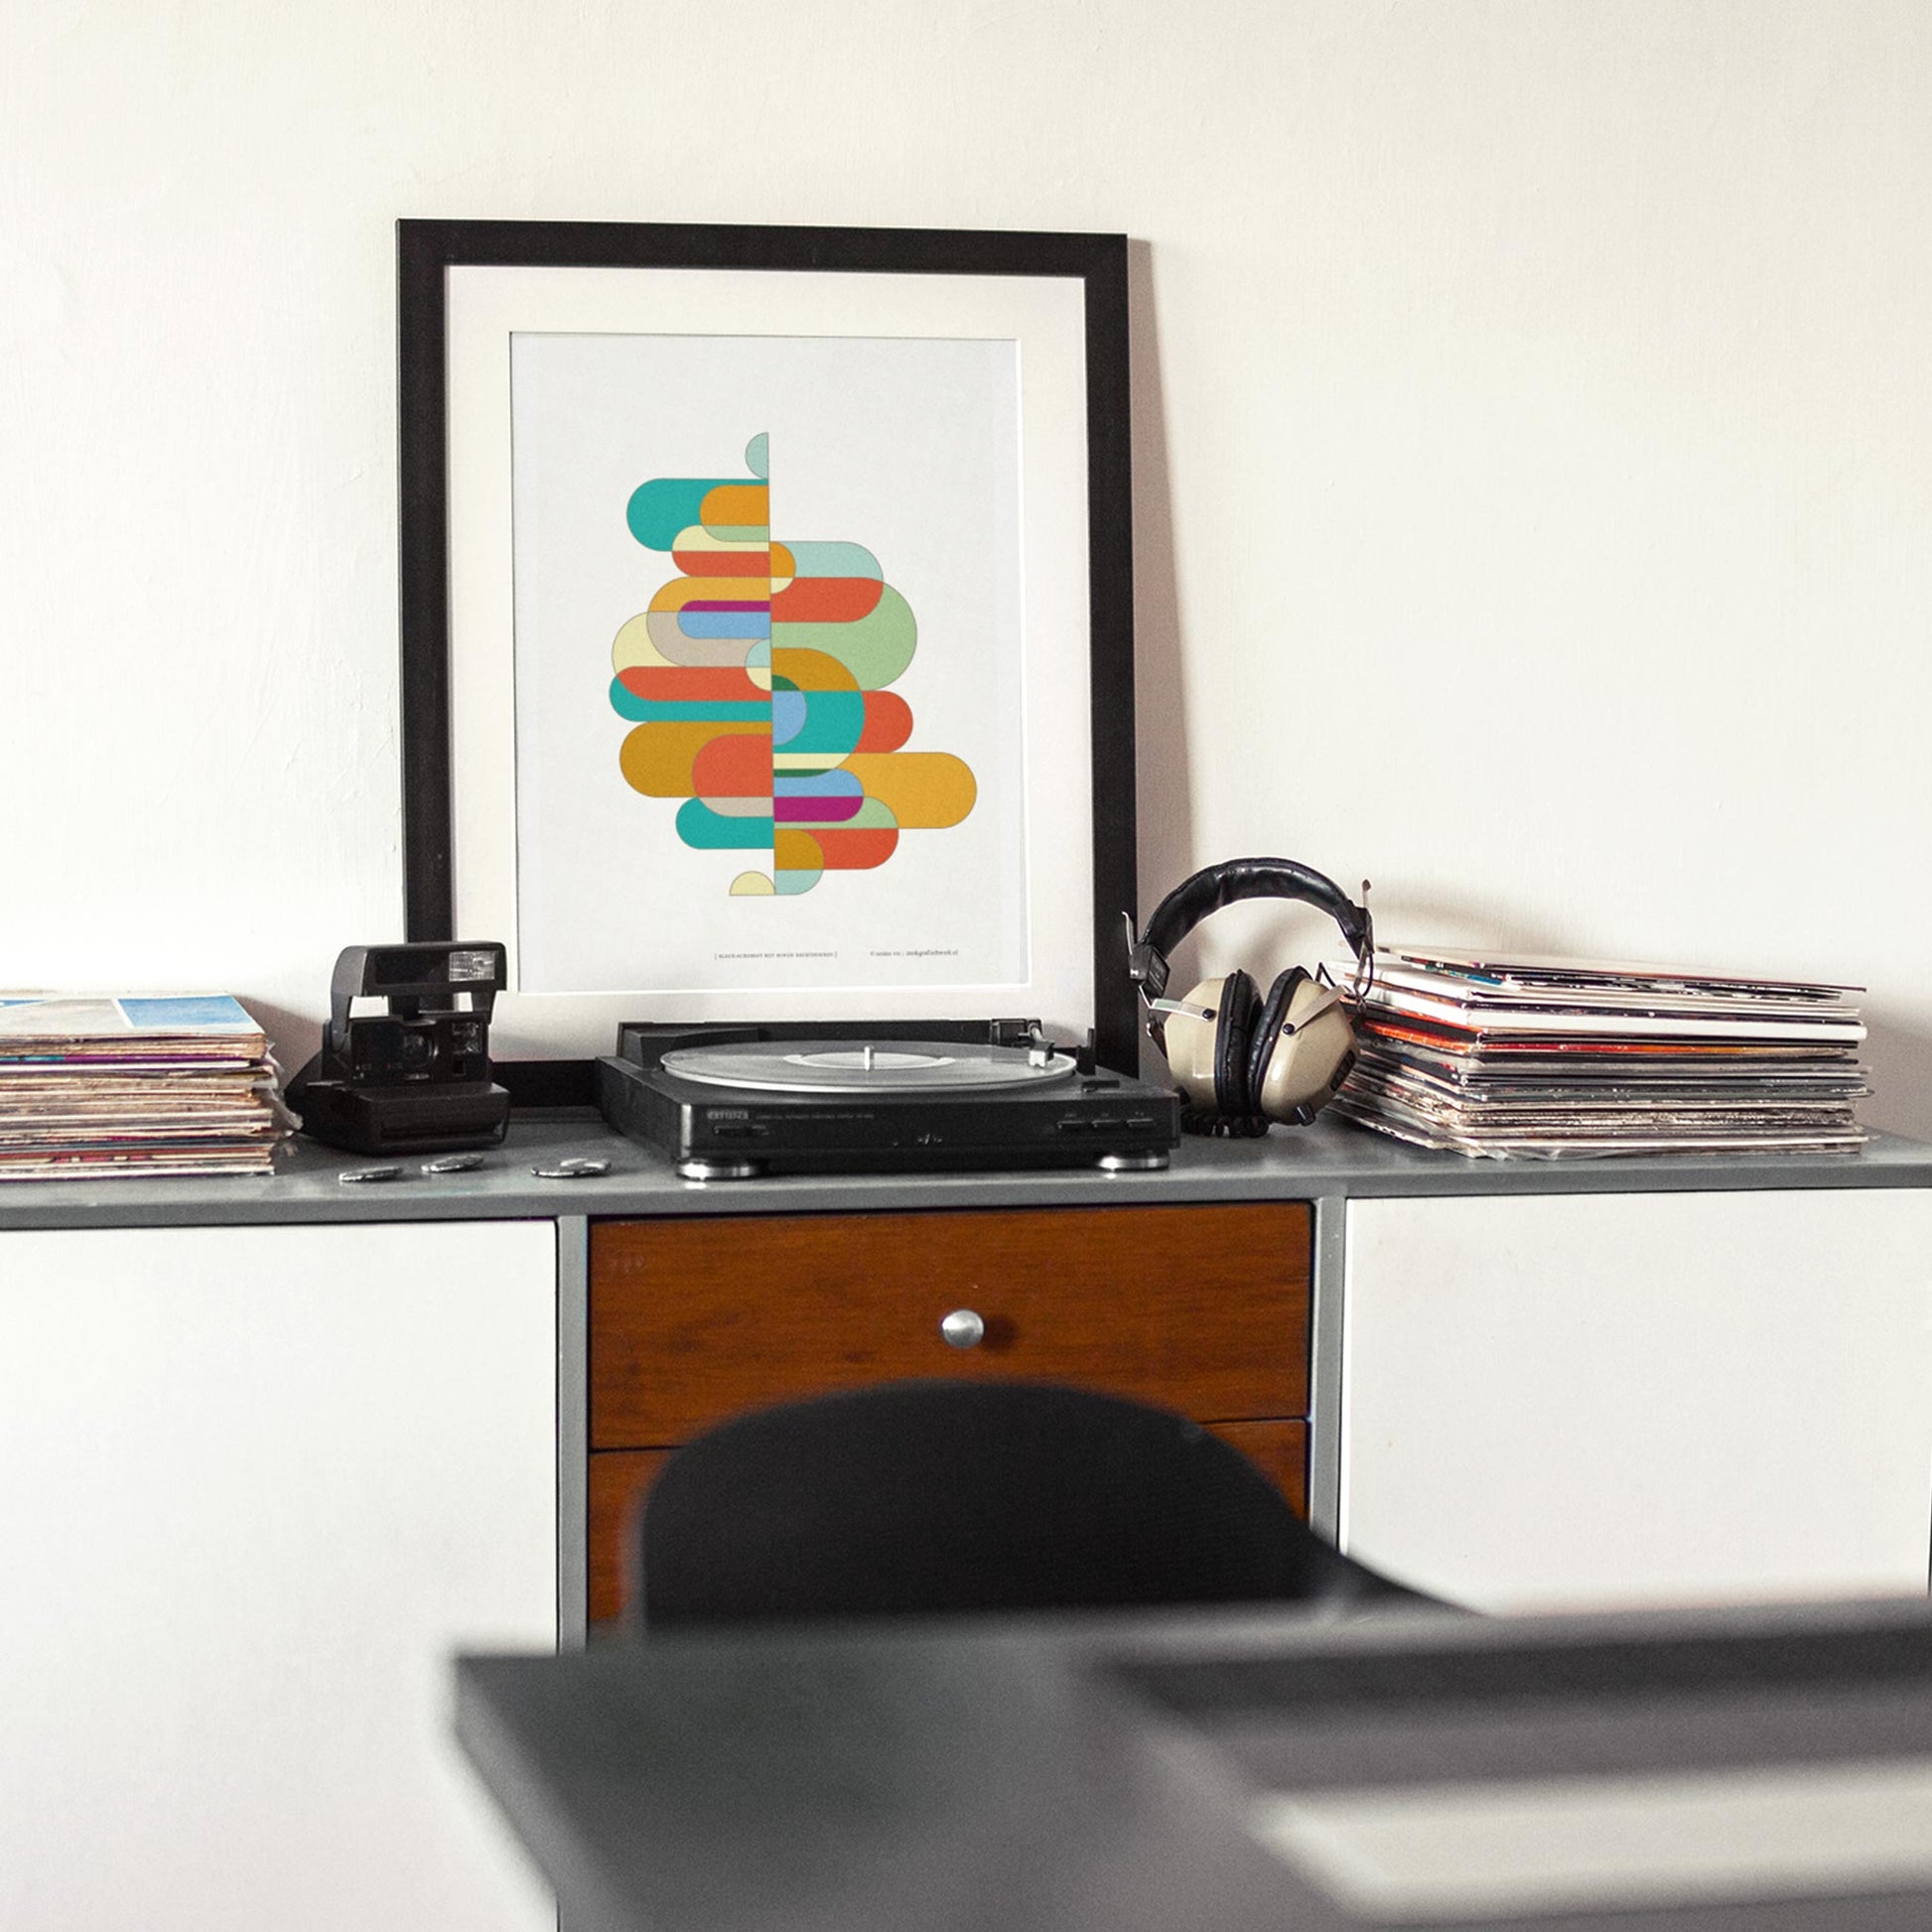 Productafbeelding, poster "kleur-acrobaat met ronde rechthoeken", foto impressie 3, staande op een tafel in een interier met een 'draaitafel' erbij